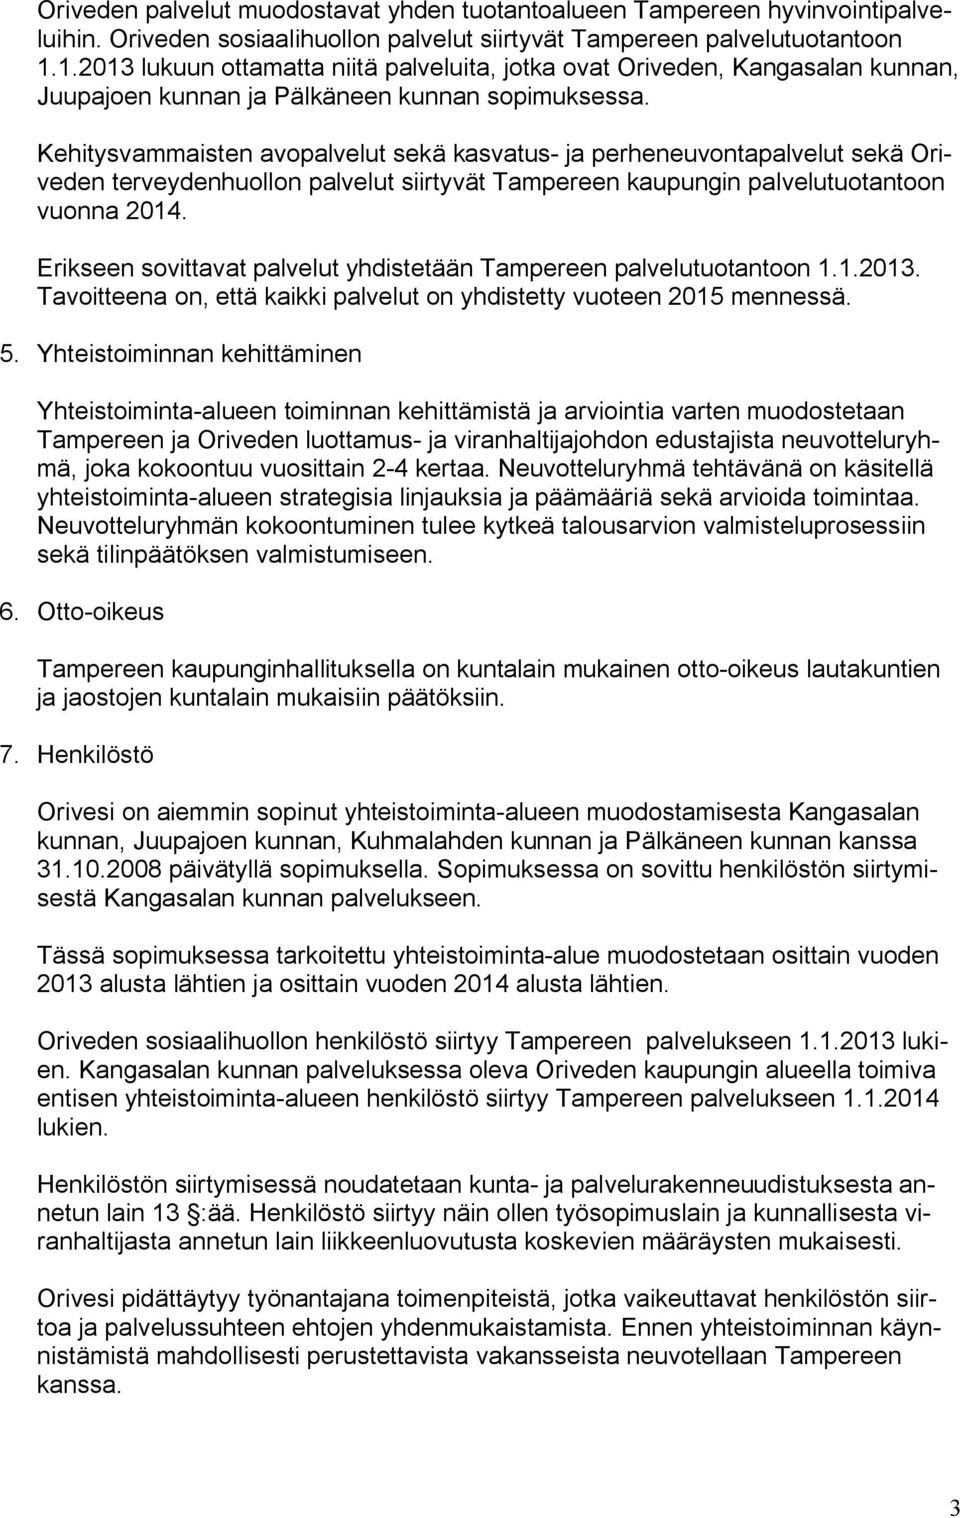 Kehitysvammaisten avopalvelut sekä kasvatus ja perheneuvontapalvelut sekä Oriveden terveydenhuollon palvelut siirtyvät Tampereen kaupungin palvelutuotantoon vuonna 2014.